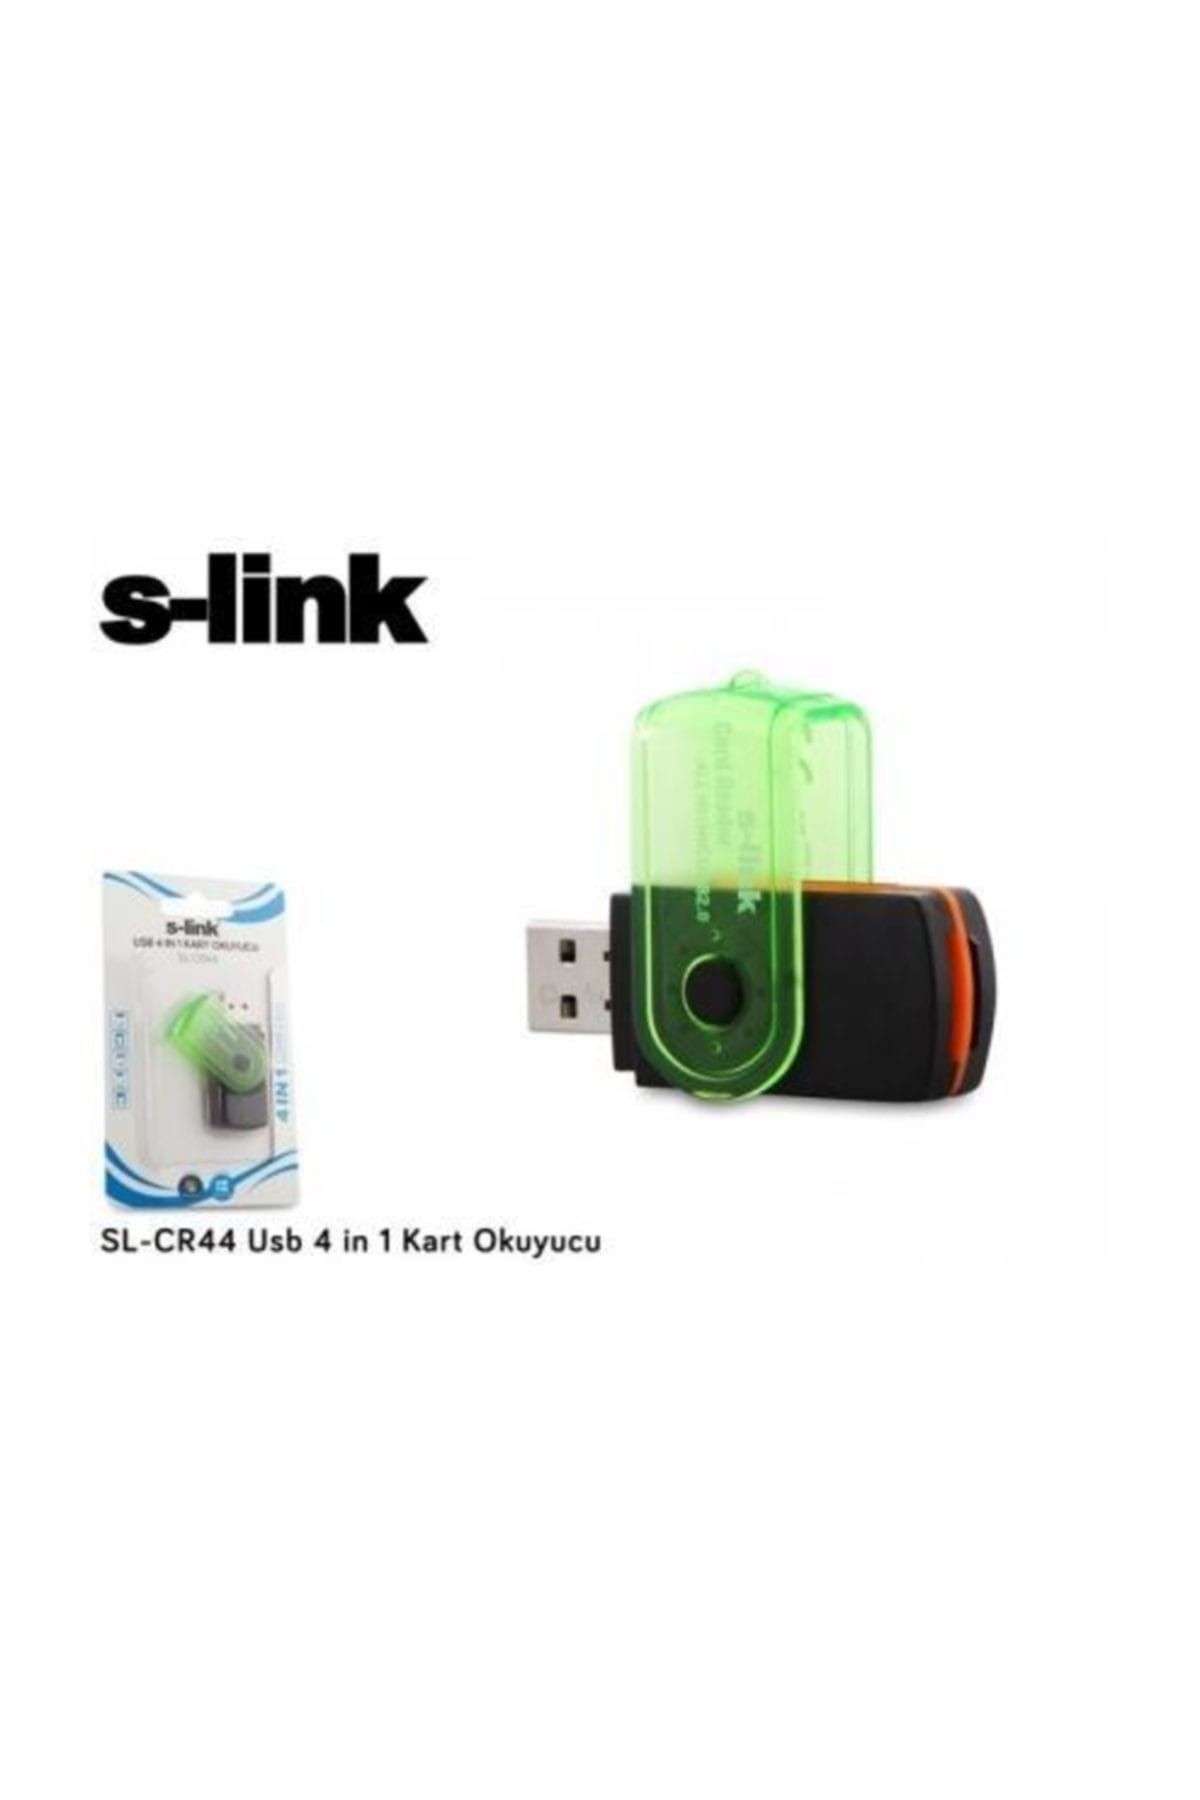 S-Link S-Lınk Sl-Cr44 Usb 2.0 4 İn 1 Kart Okuyucu